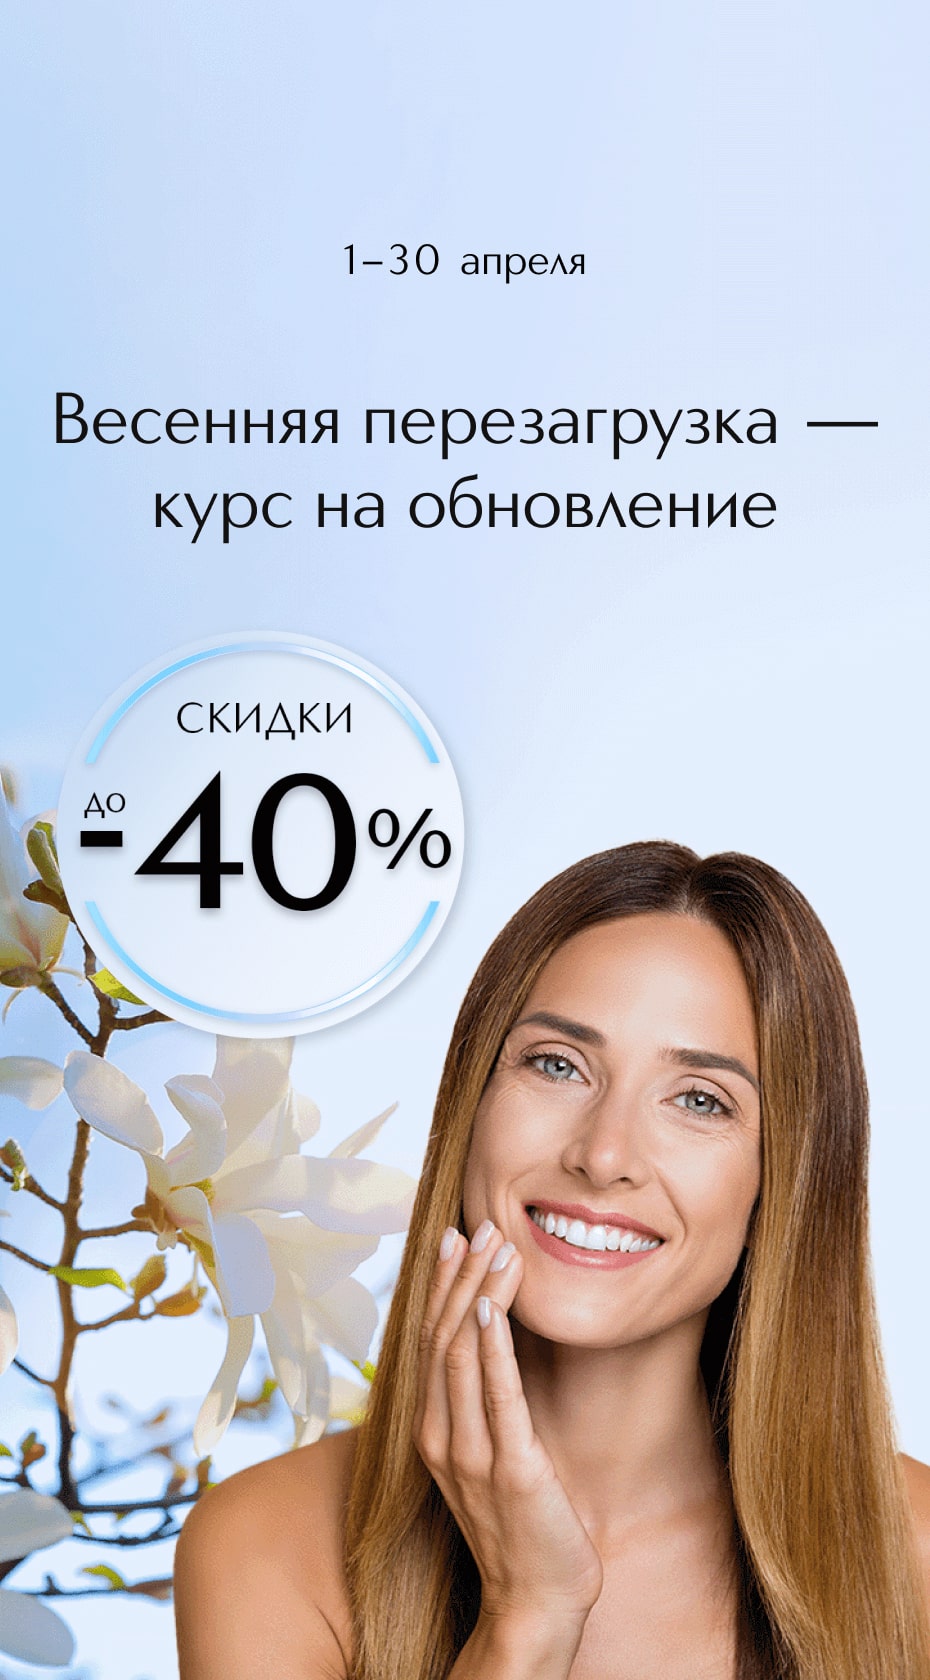 С 1 по 30 апреля снижаем цены до 40% на средства для ухода 360 – beauty продукты, которые подчеркнут вашу естественную красоту.